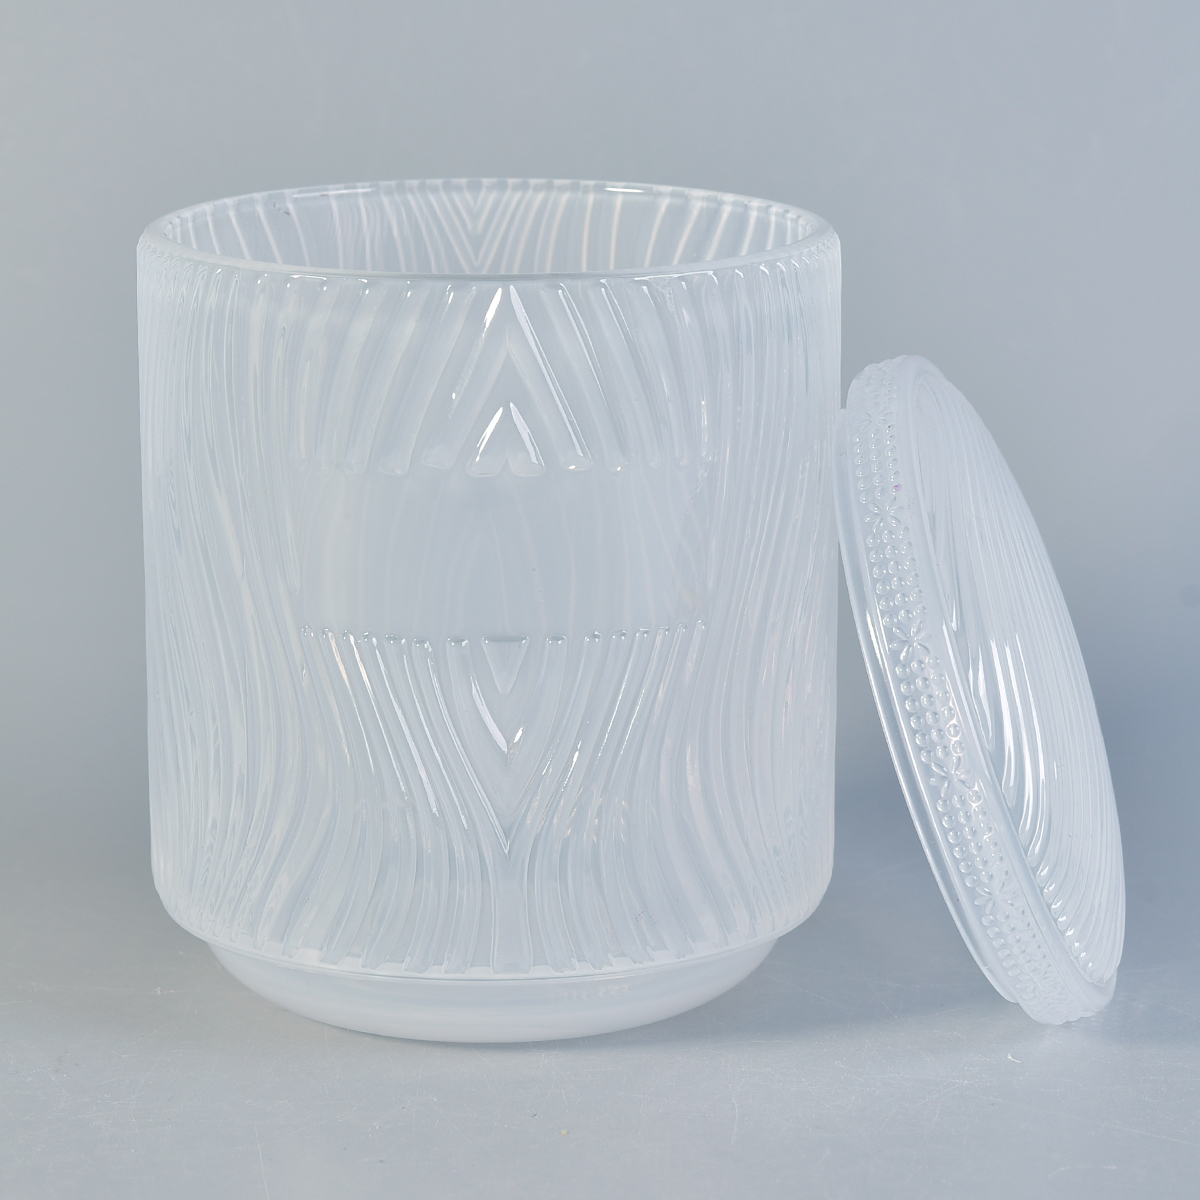 Pots de bougie en verre gaufré populaires avec couvercles